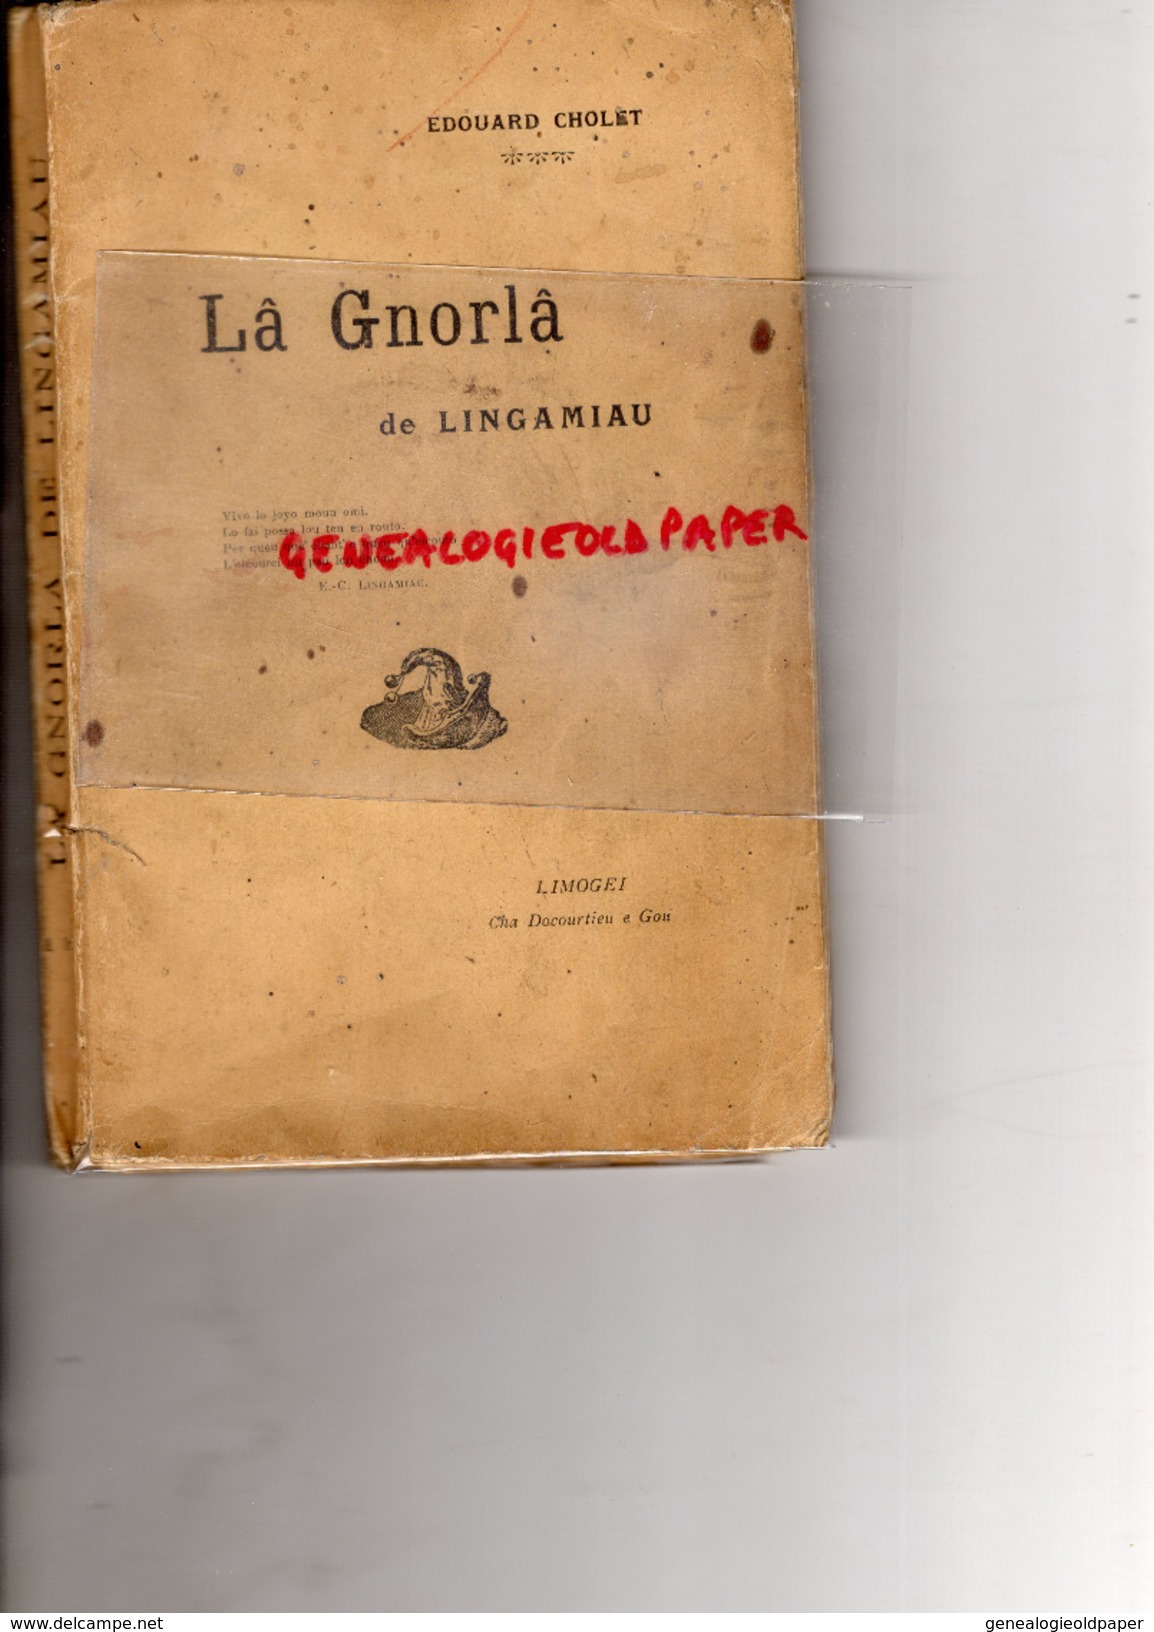 87 - LIMOGES- LA GNORLA DE LINGAMIAU- EDOUARD CHOLET - CHA DACOURTIEU E GOU- PATOIS LIMOUSIN - - Limousin